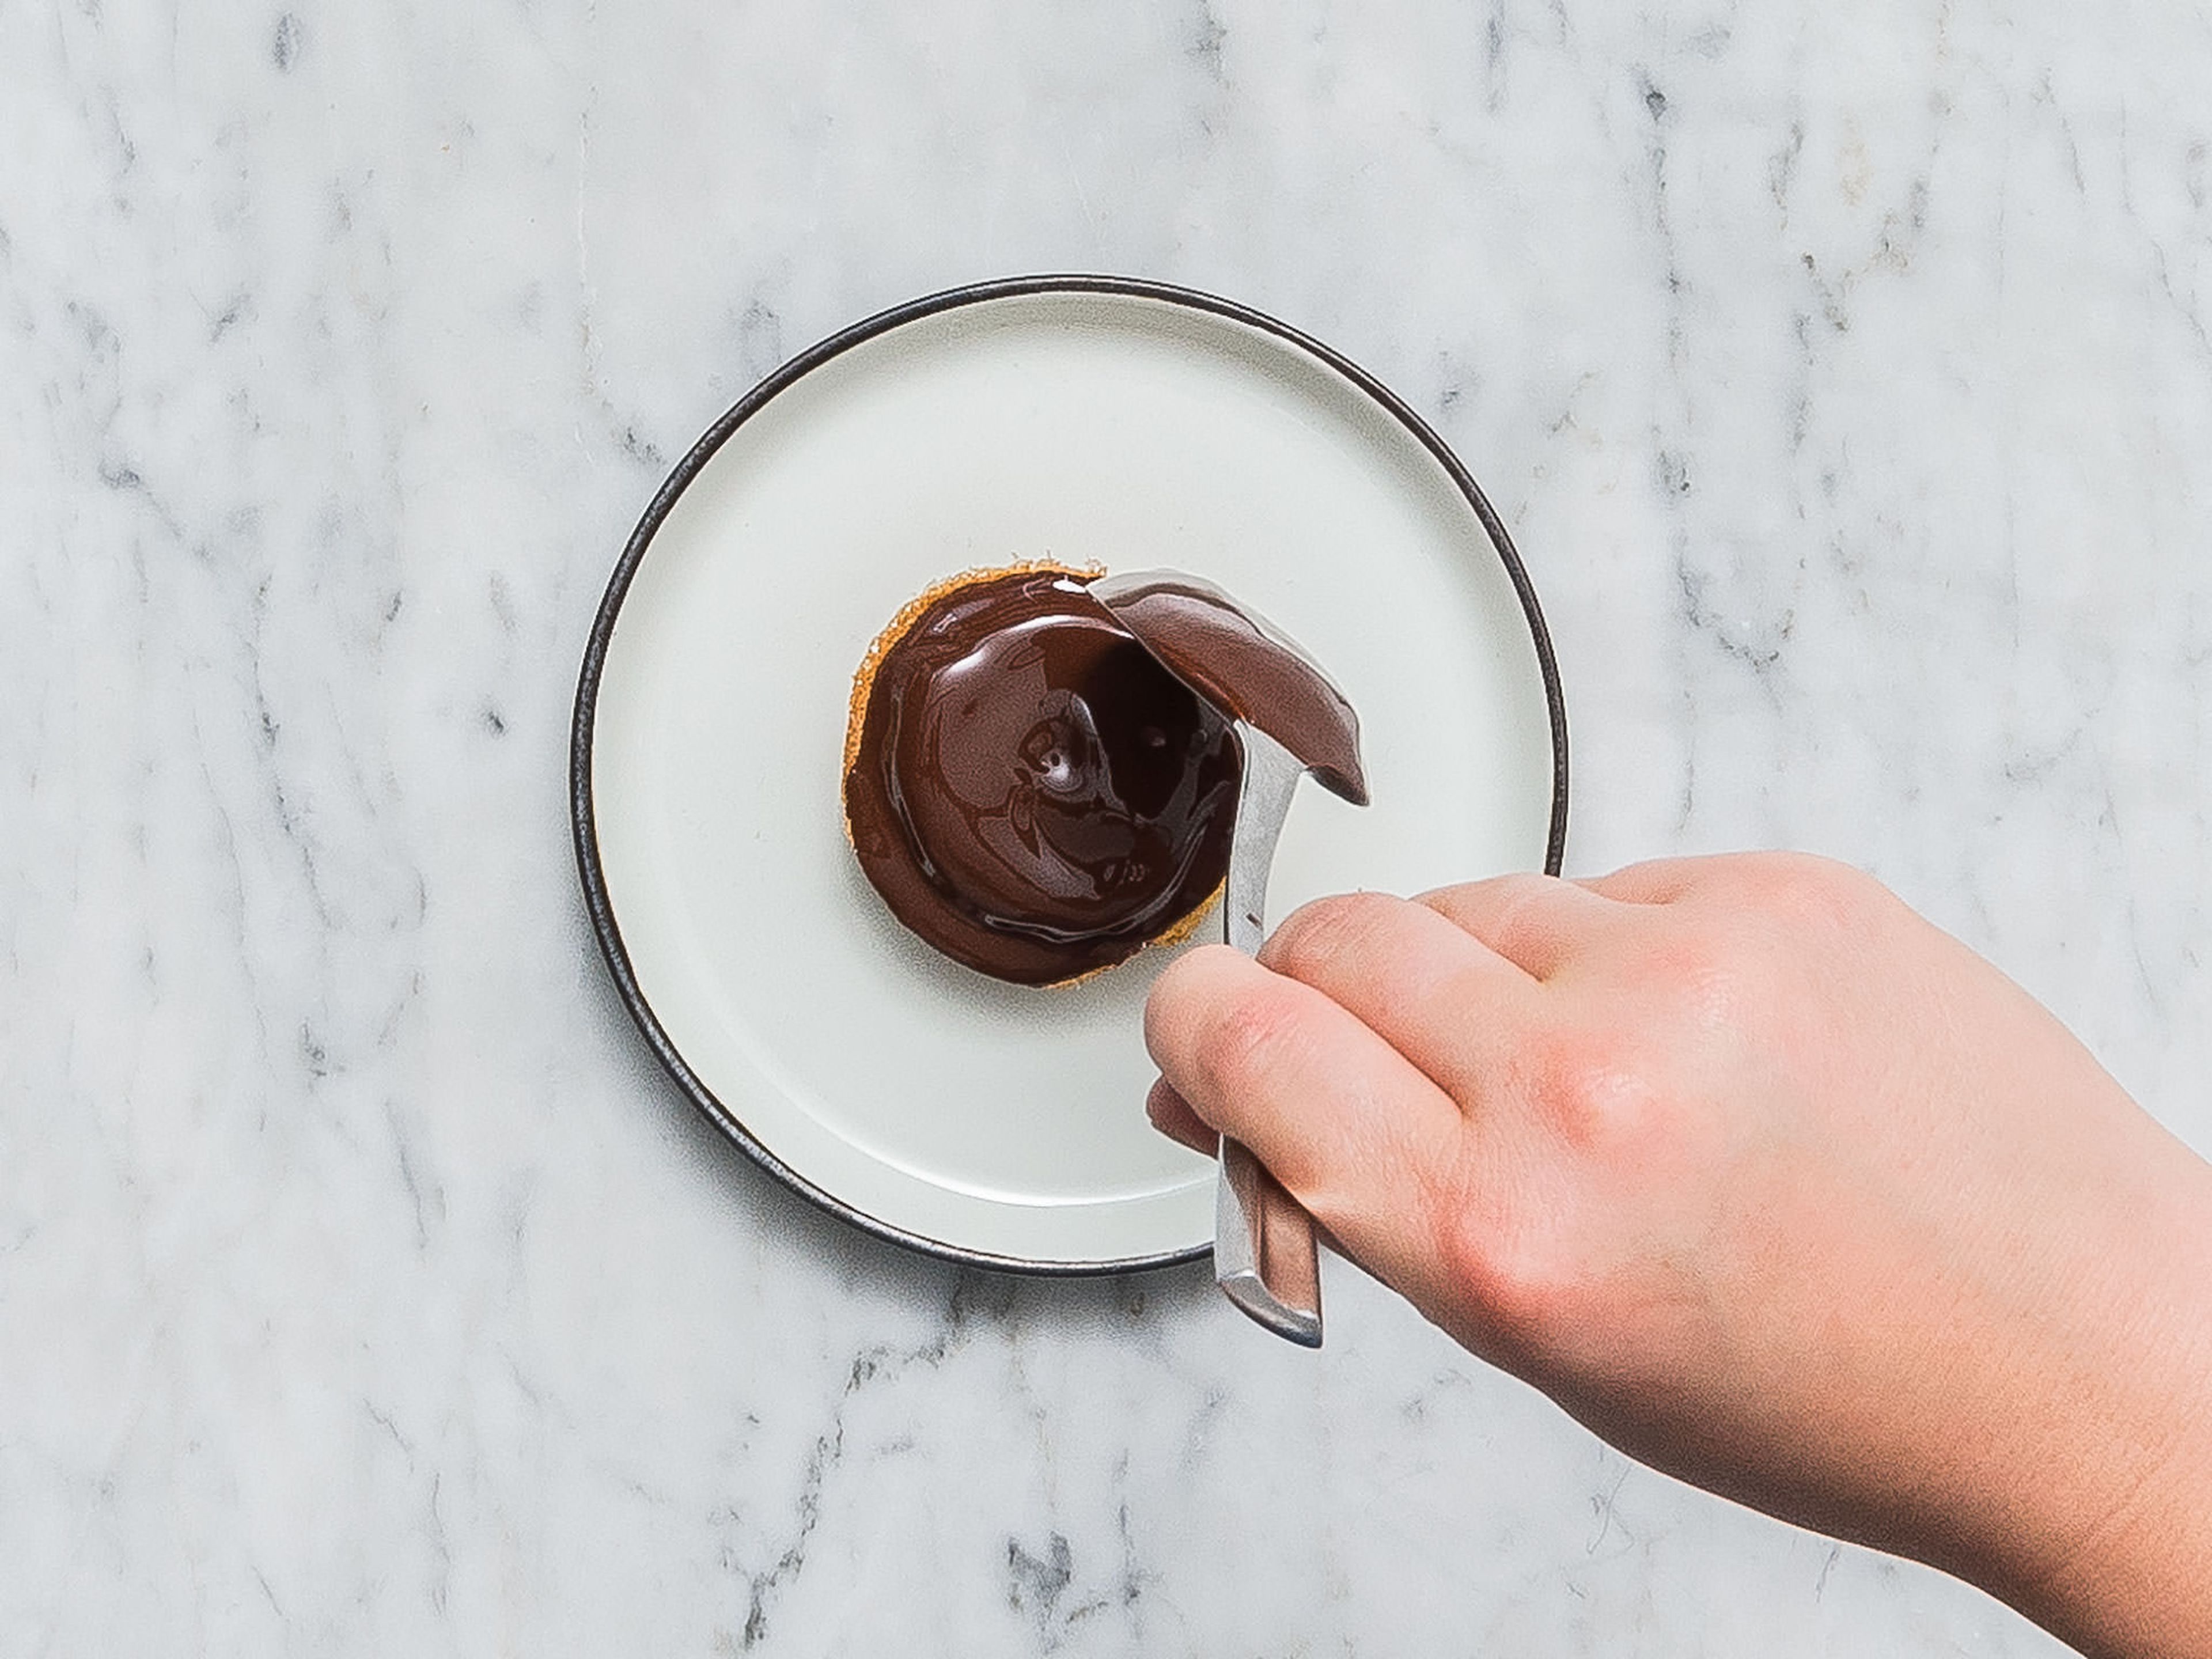 Zartbitterschokolade hacken und zwei Drittel der Schokolade in einer hitzebeständigen Schüssel über einem Topf mit köchelndem Wasser schmelzen. Die restliche gehackte Schokolade dazugeben und schmelzen lassen. Vom Herd nehmen und ca. 10 Min. abkühlen lassen. Je 1 - 2 EL der geschmolzenen Schokolade auf jeden Soft Cake geben und vorsichtig bis zum Rand verteilen. Im Kühlschrank ruhen lassen, bis die Schokolade fest ist. Guten Appetit!